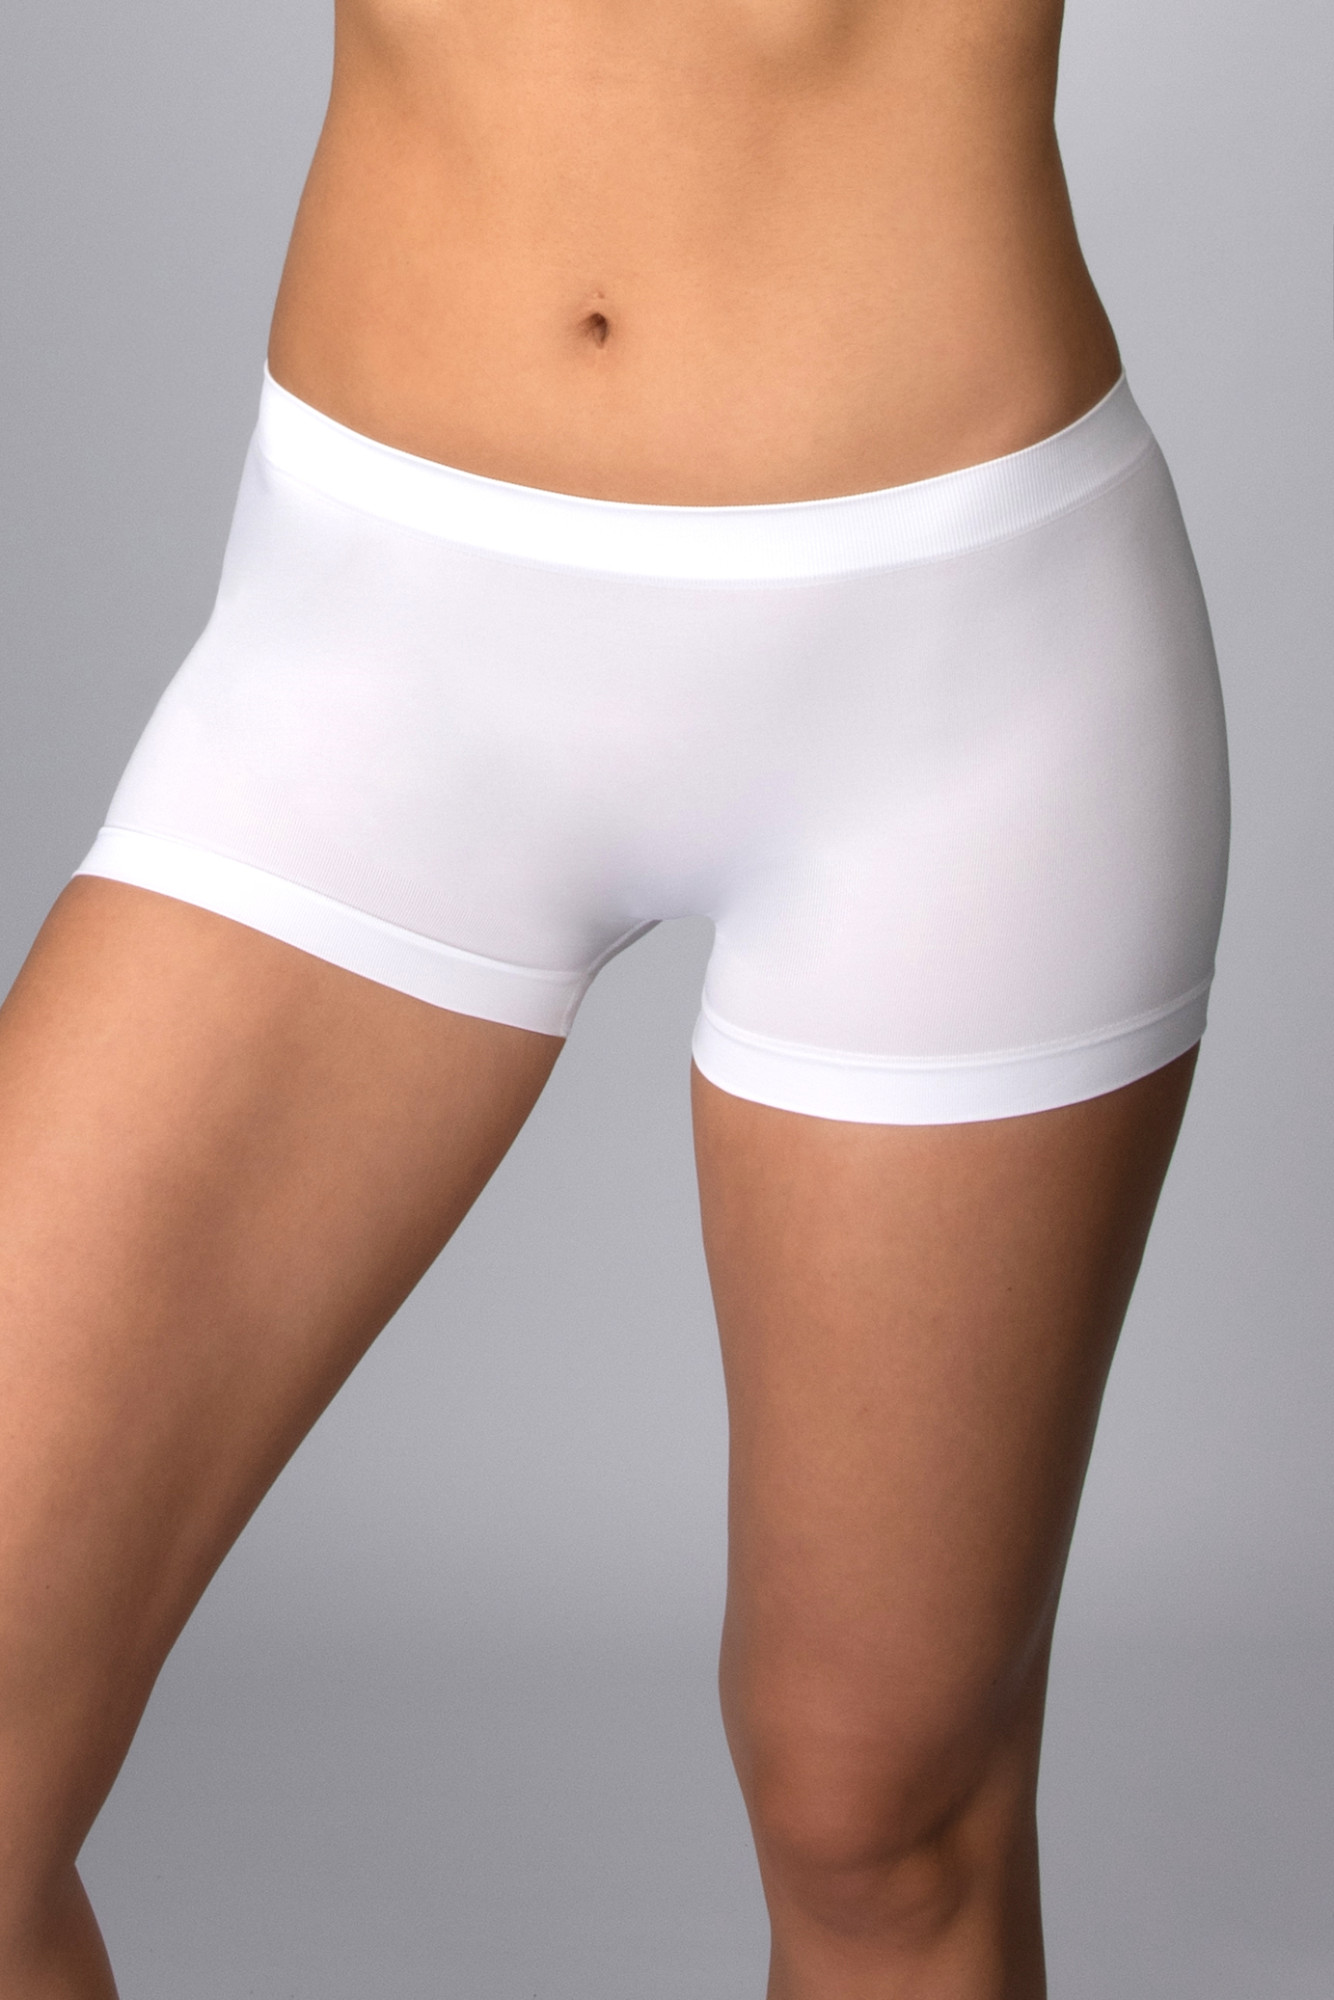 Kalhotky šortkového střihu bezešvé Panty Florida Intimidea Barva: Bílá, velikost S/M